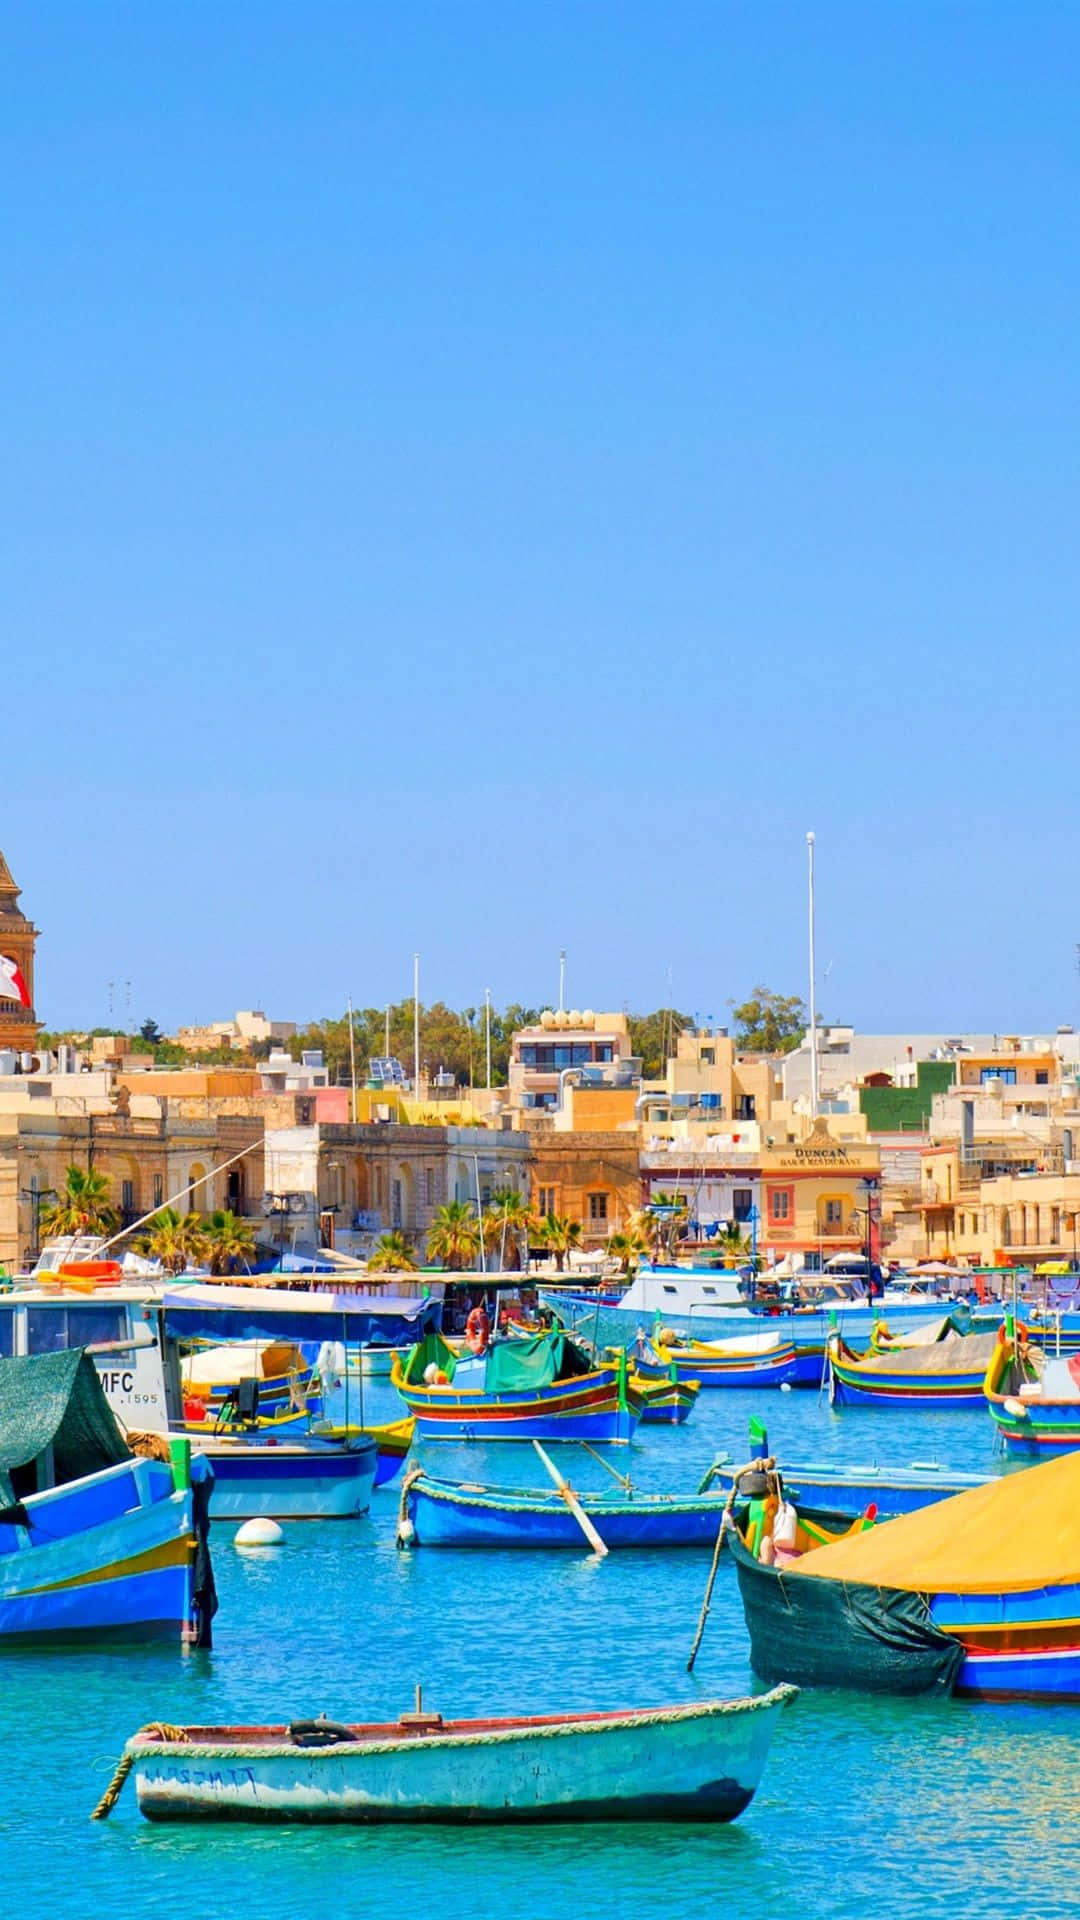 Impresionantevista De Valletta, La Encantadora Ciudad Capital De Malta.